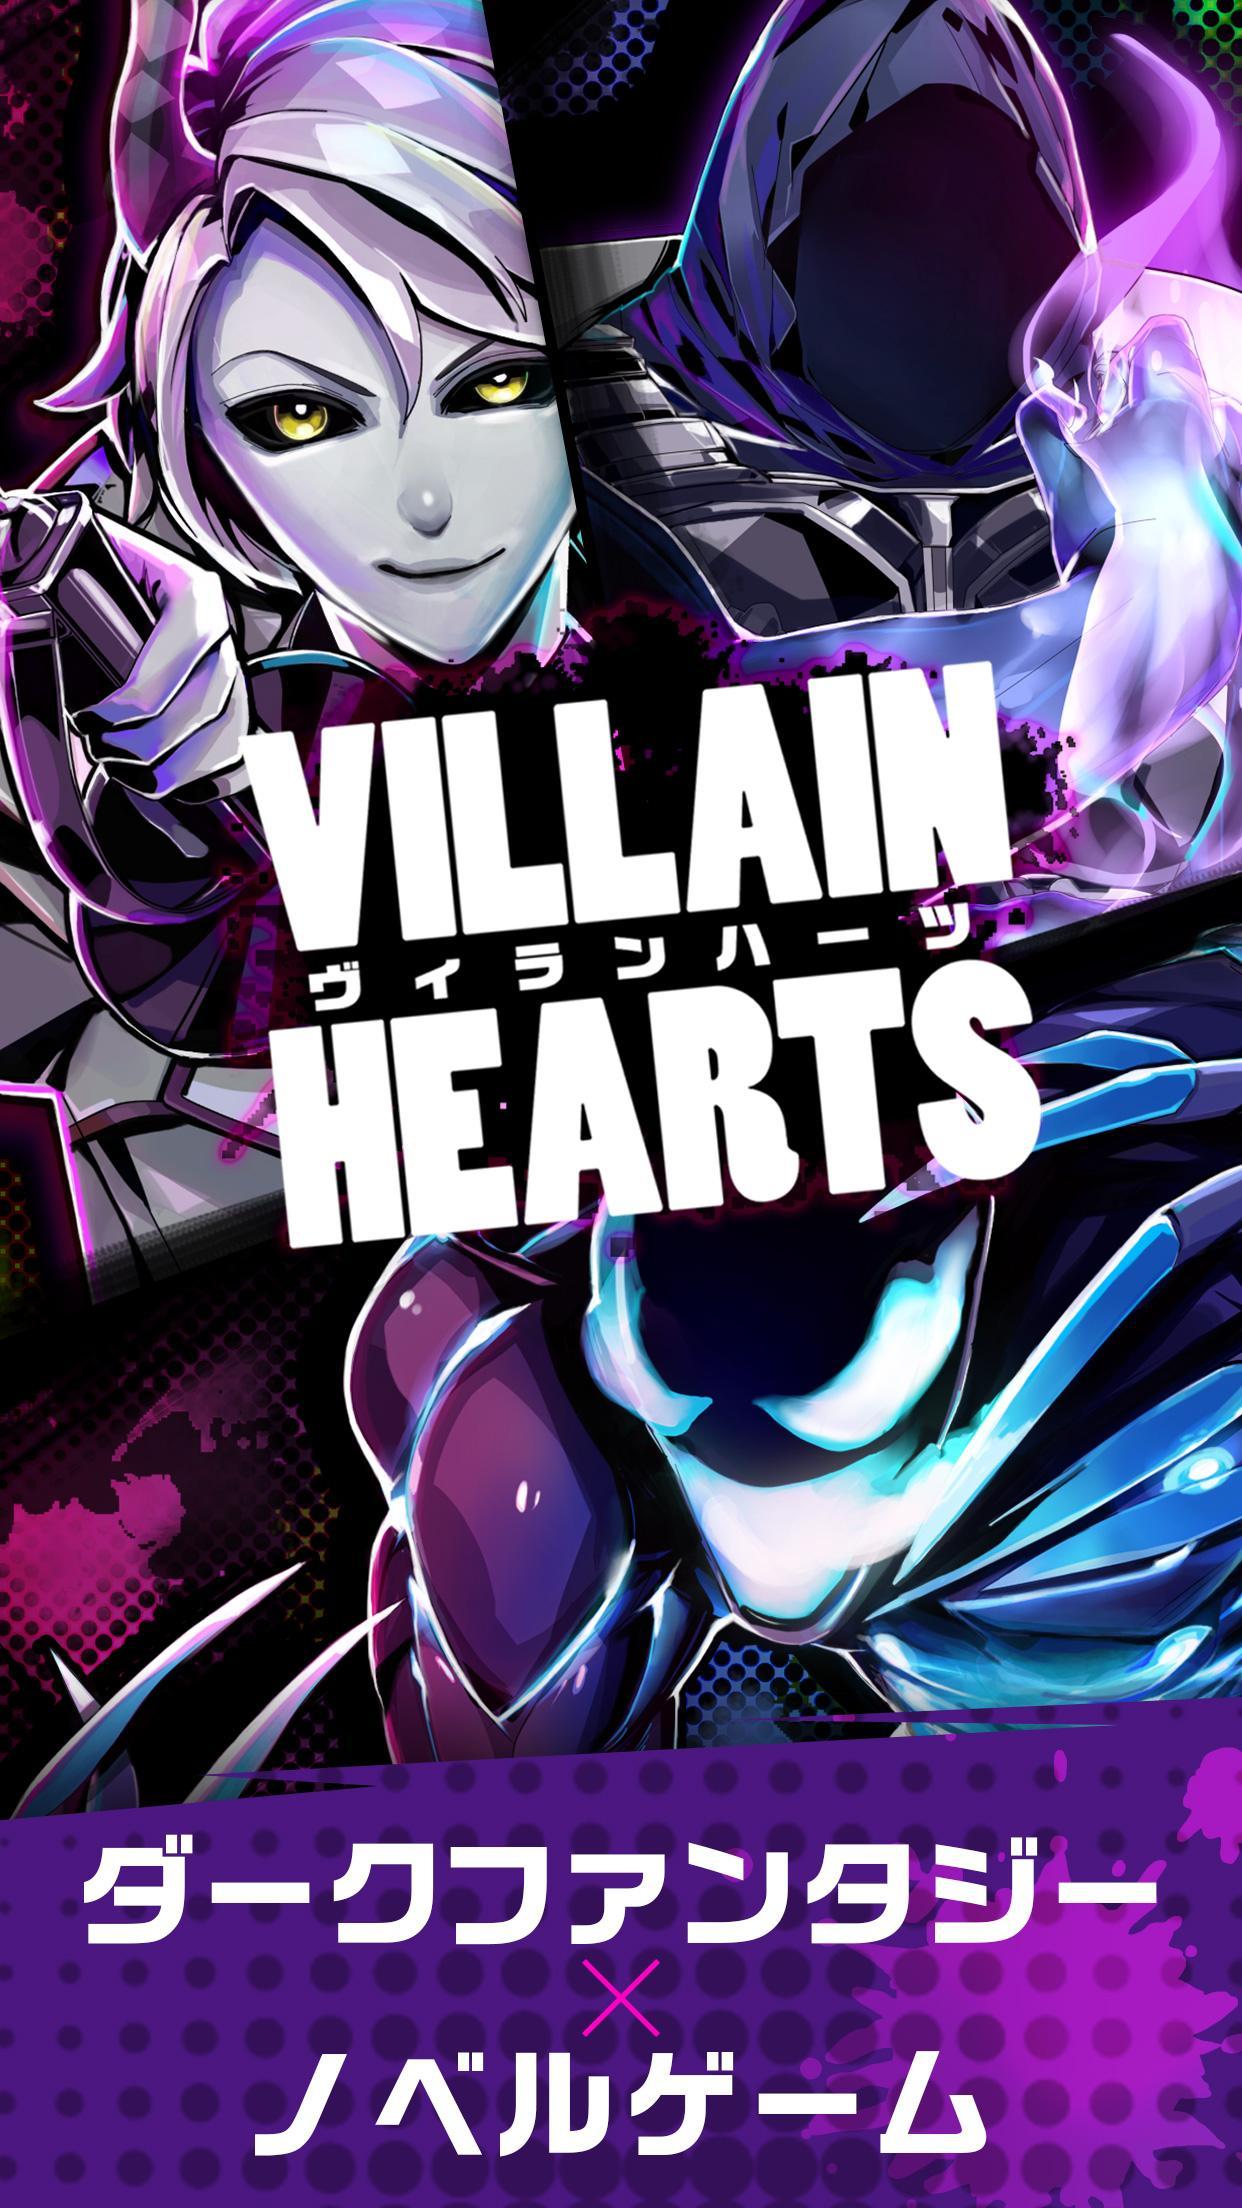 Screenshot 1 of Villain Hearts - VILLAIN HEARTS 1.3.5